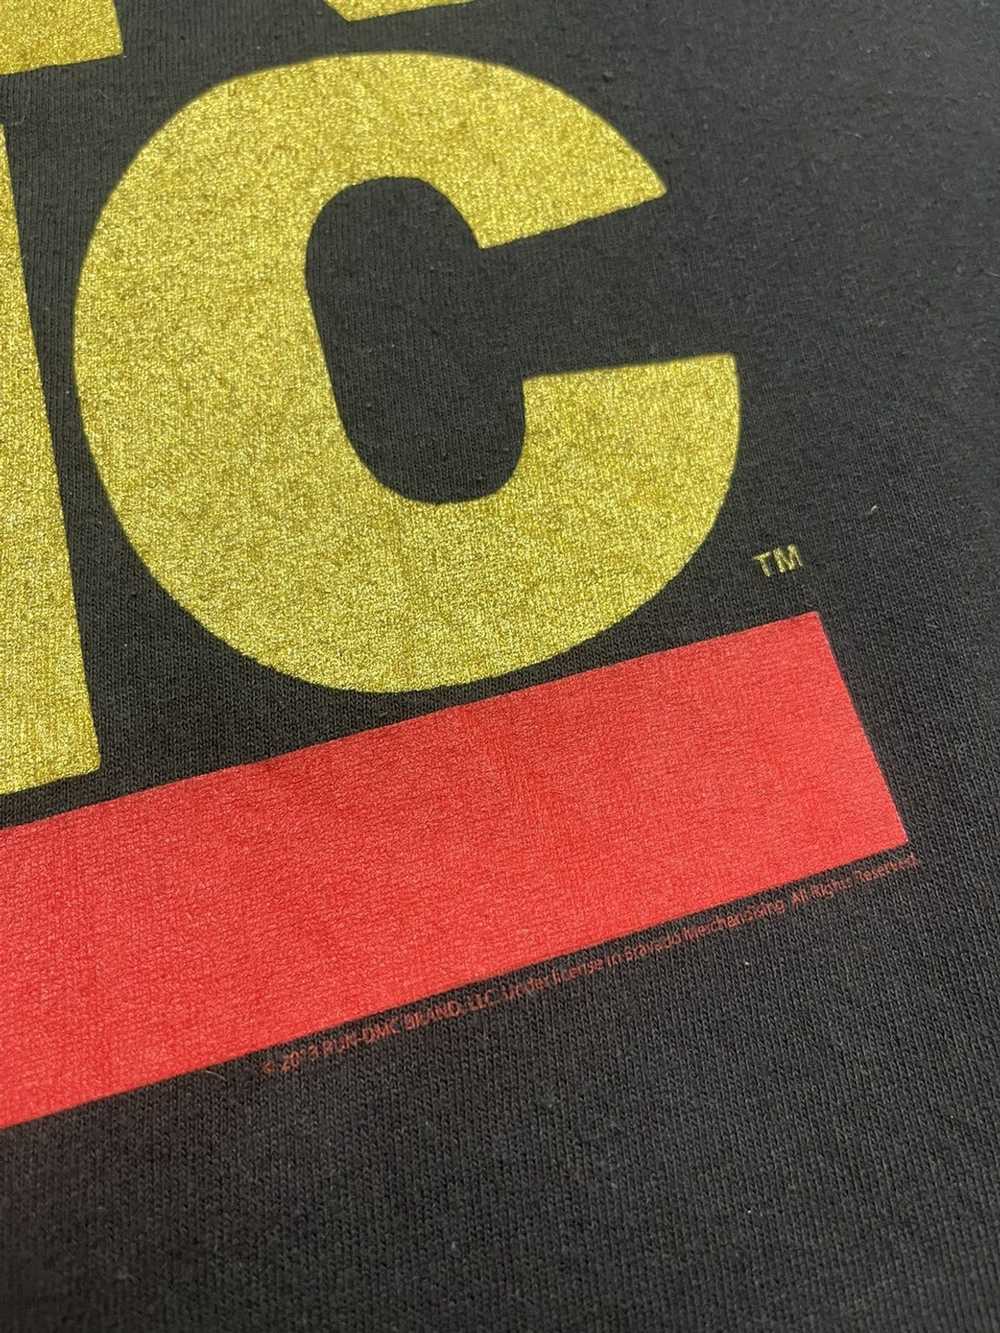 Band Tees × Run Dmc RUN DMC Big Logo T-Shirt - image 4